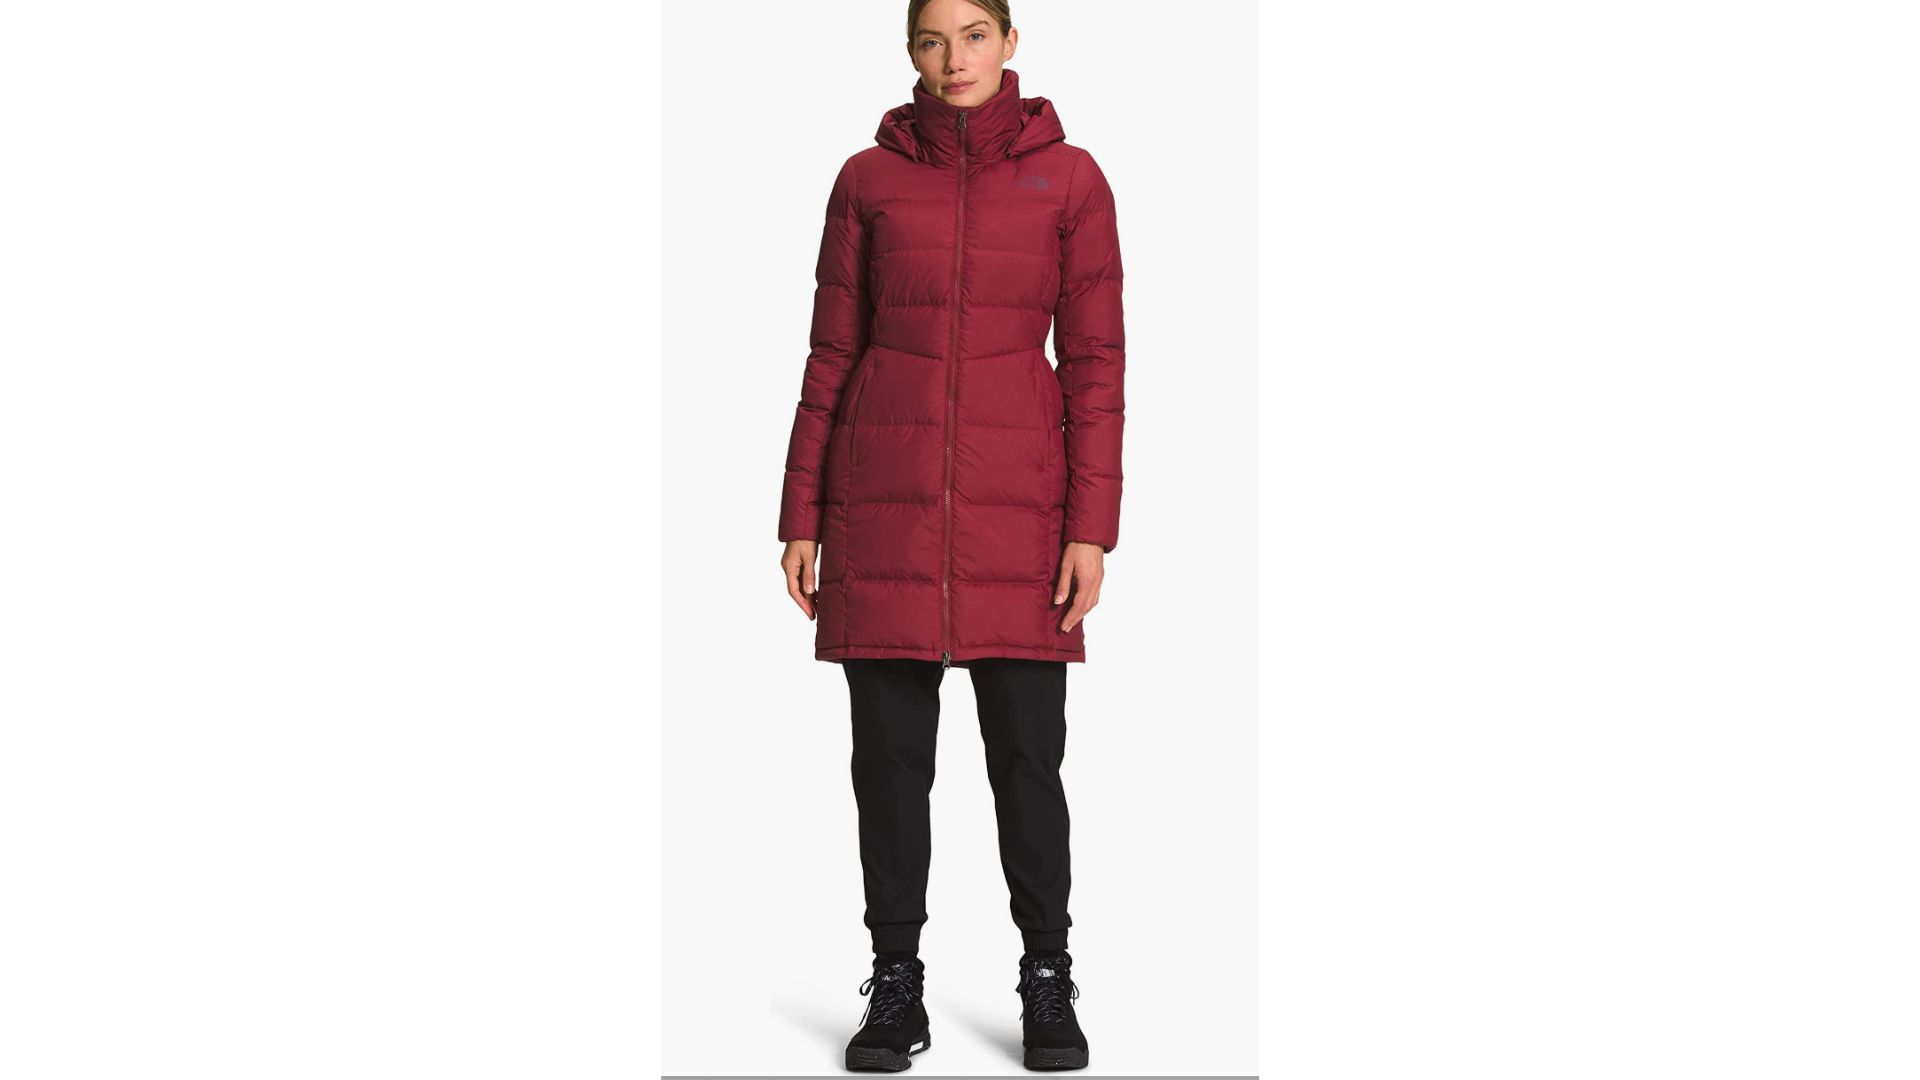 Best Winter Coats For Women Over 50